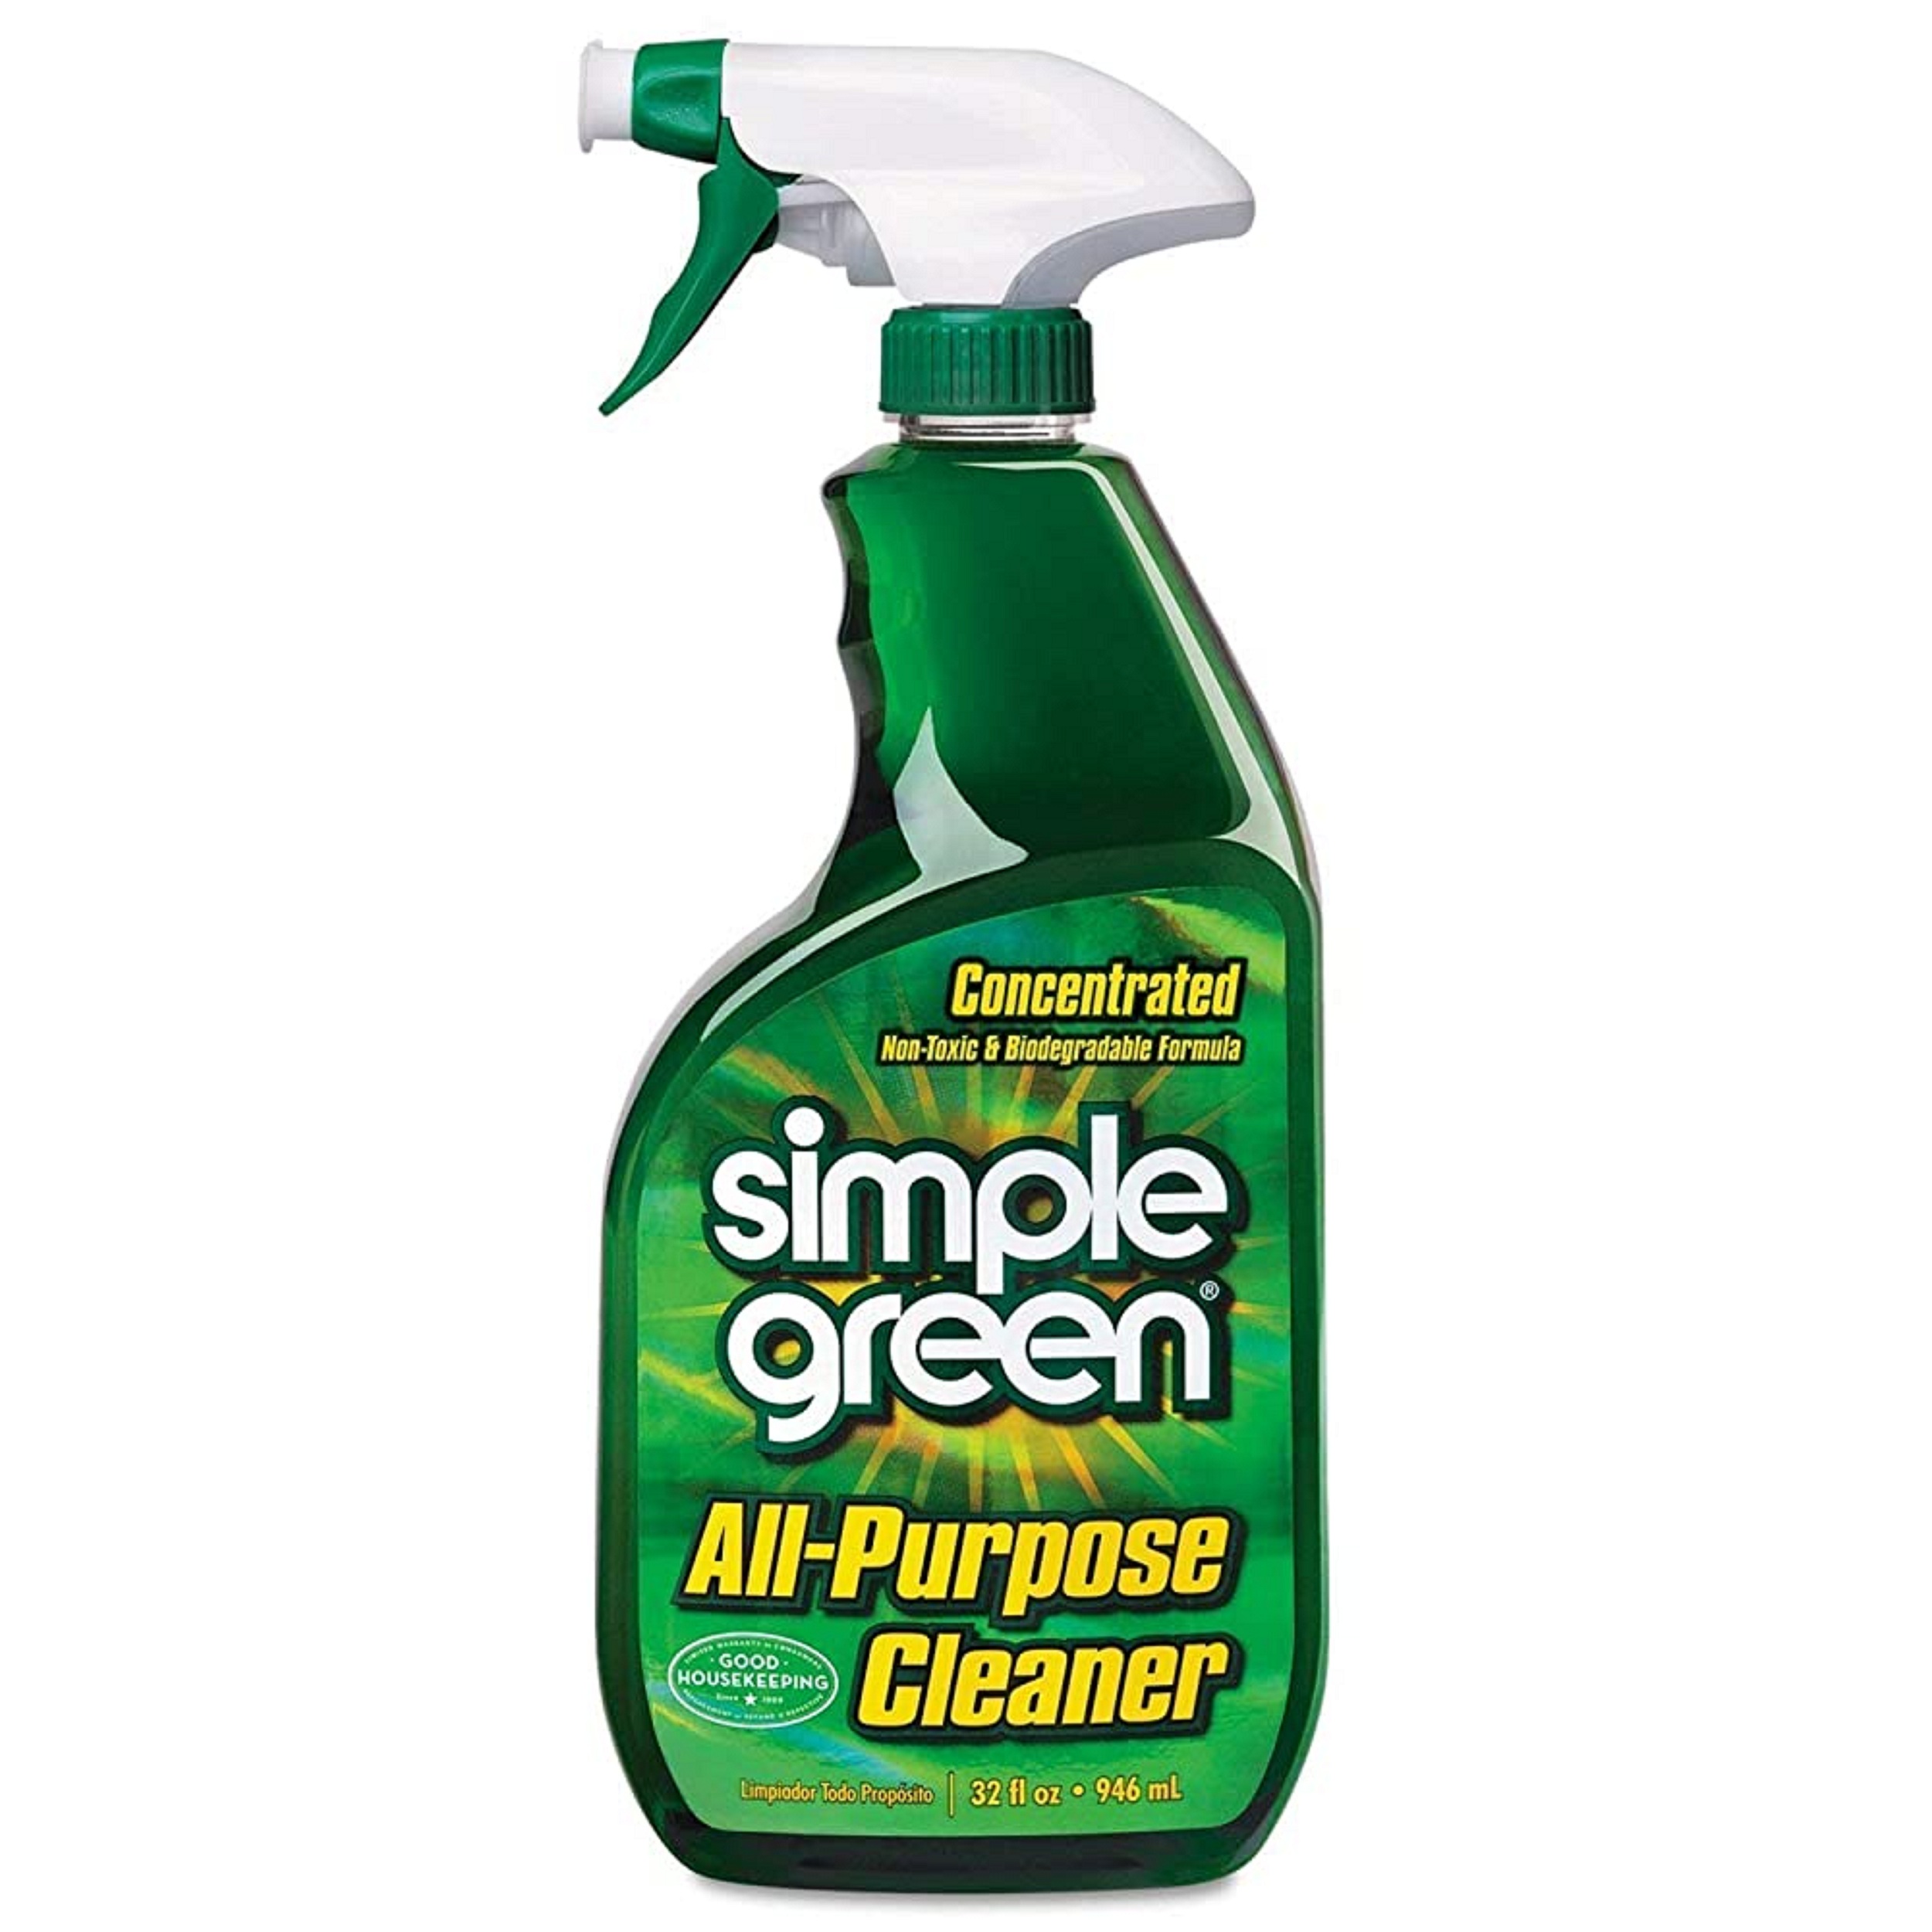 Simply cleaning. Bullsone очиститель многофункциональный Multi purpose Cleaner, 0.55 л. Simple Green all purpose Cleaner. Концентрат clean. All purpose Cleaner универсальный.